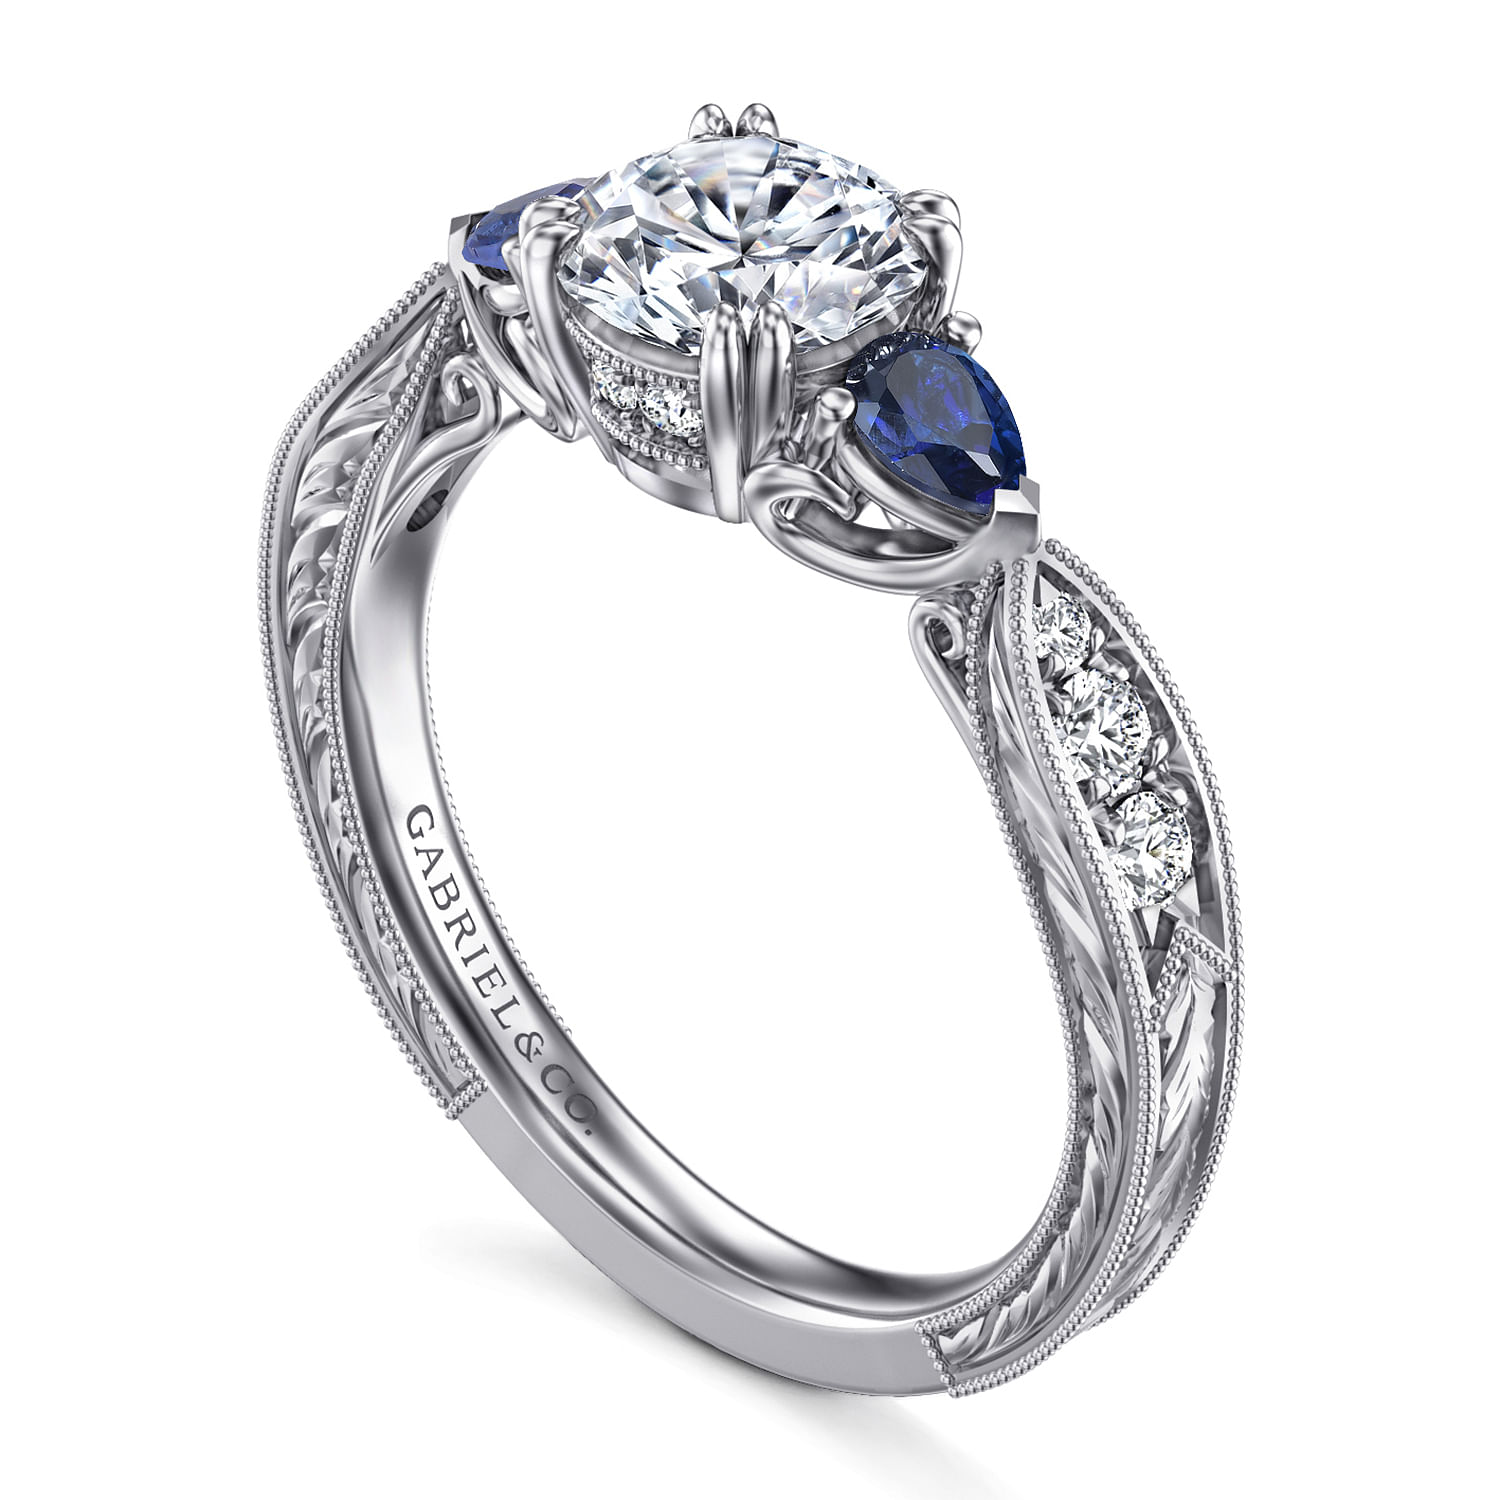 Cruz - Vintage Inspired Platinum Round Three Stone Sapphire and Diamond Engagement Ring - 0.19 ct - Shot 3